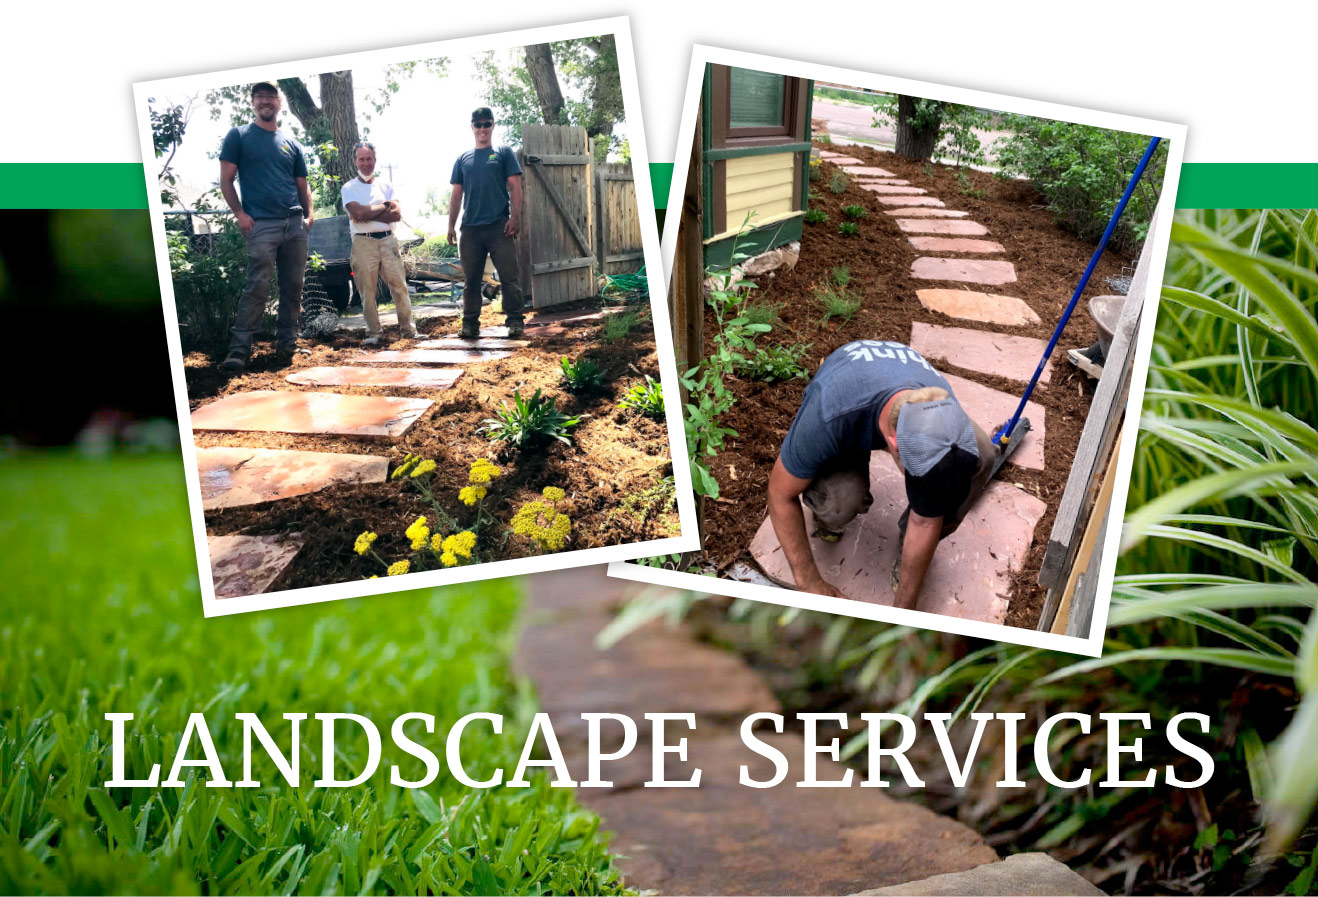 Landscape services